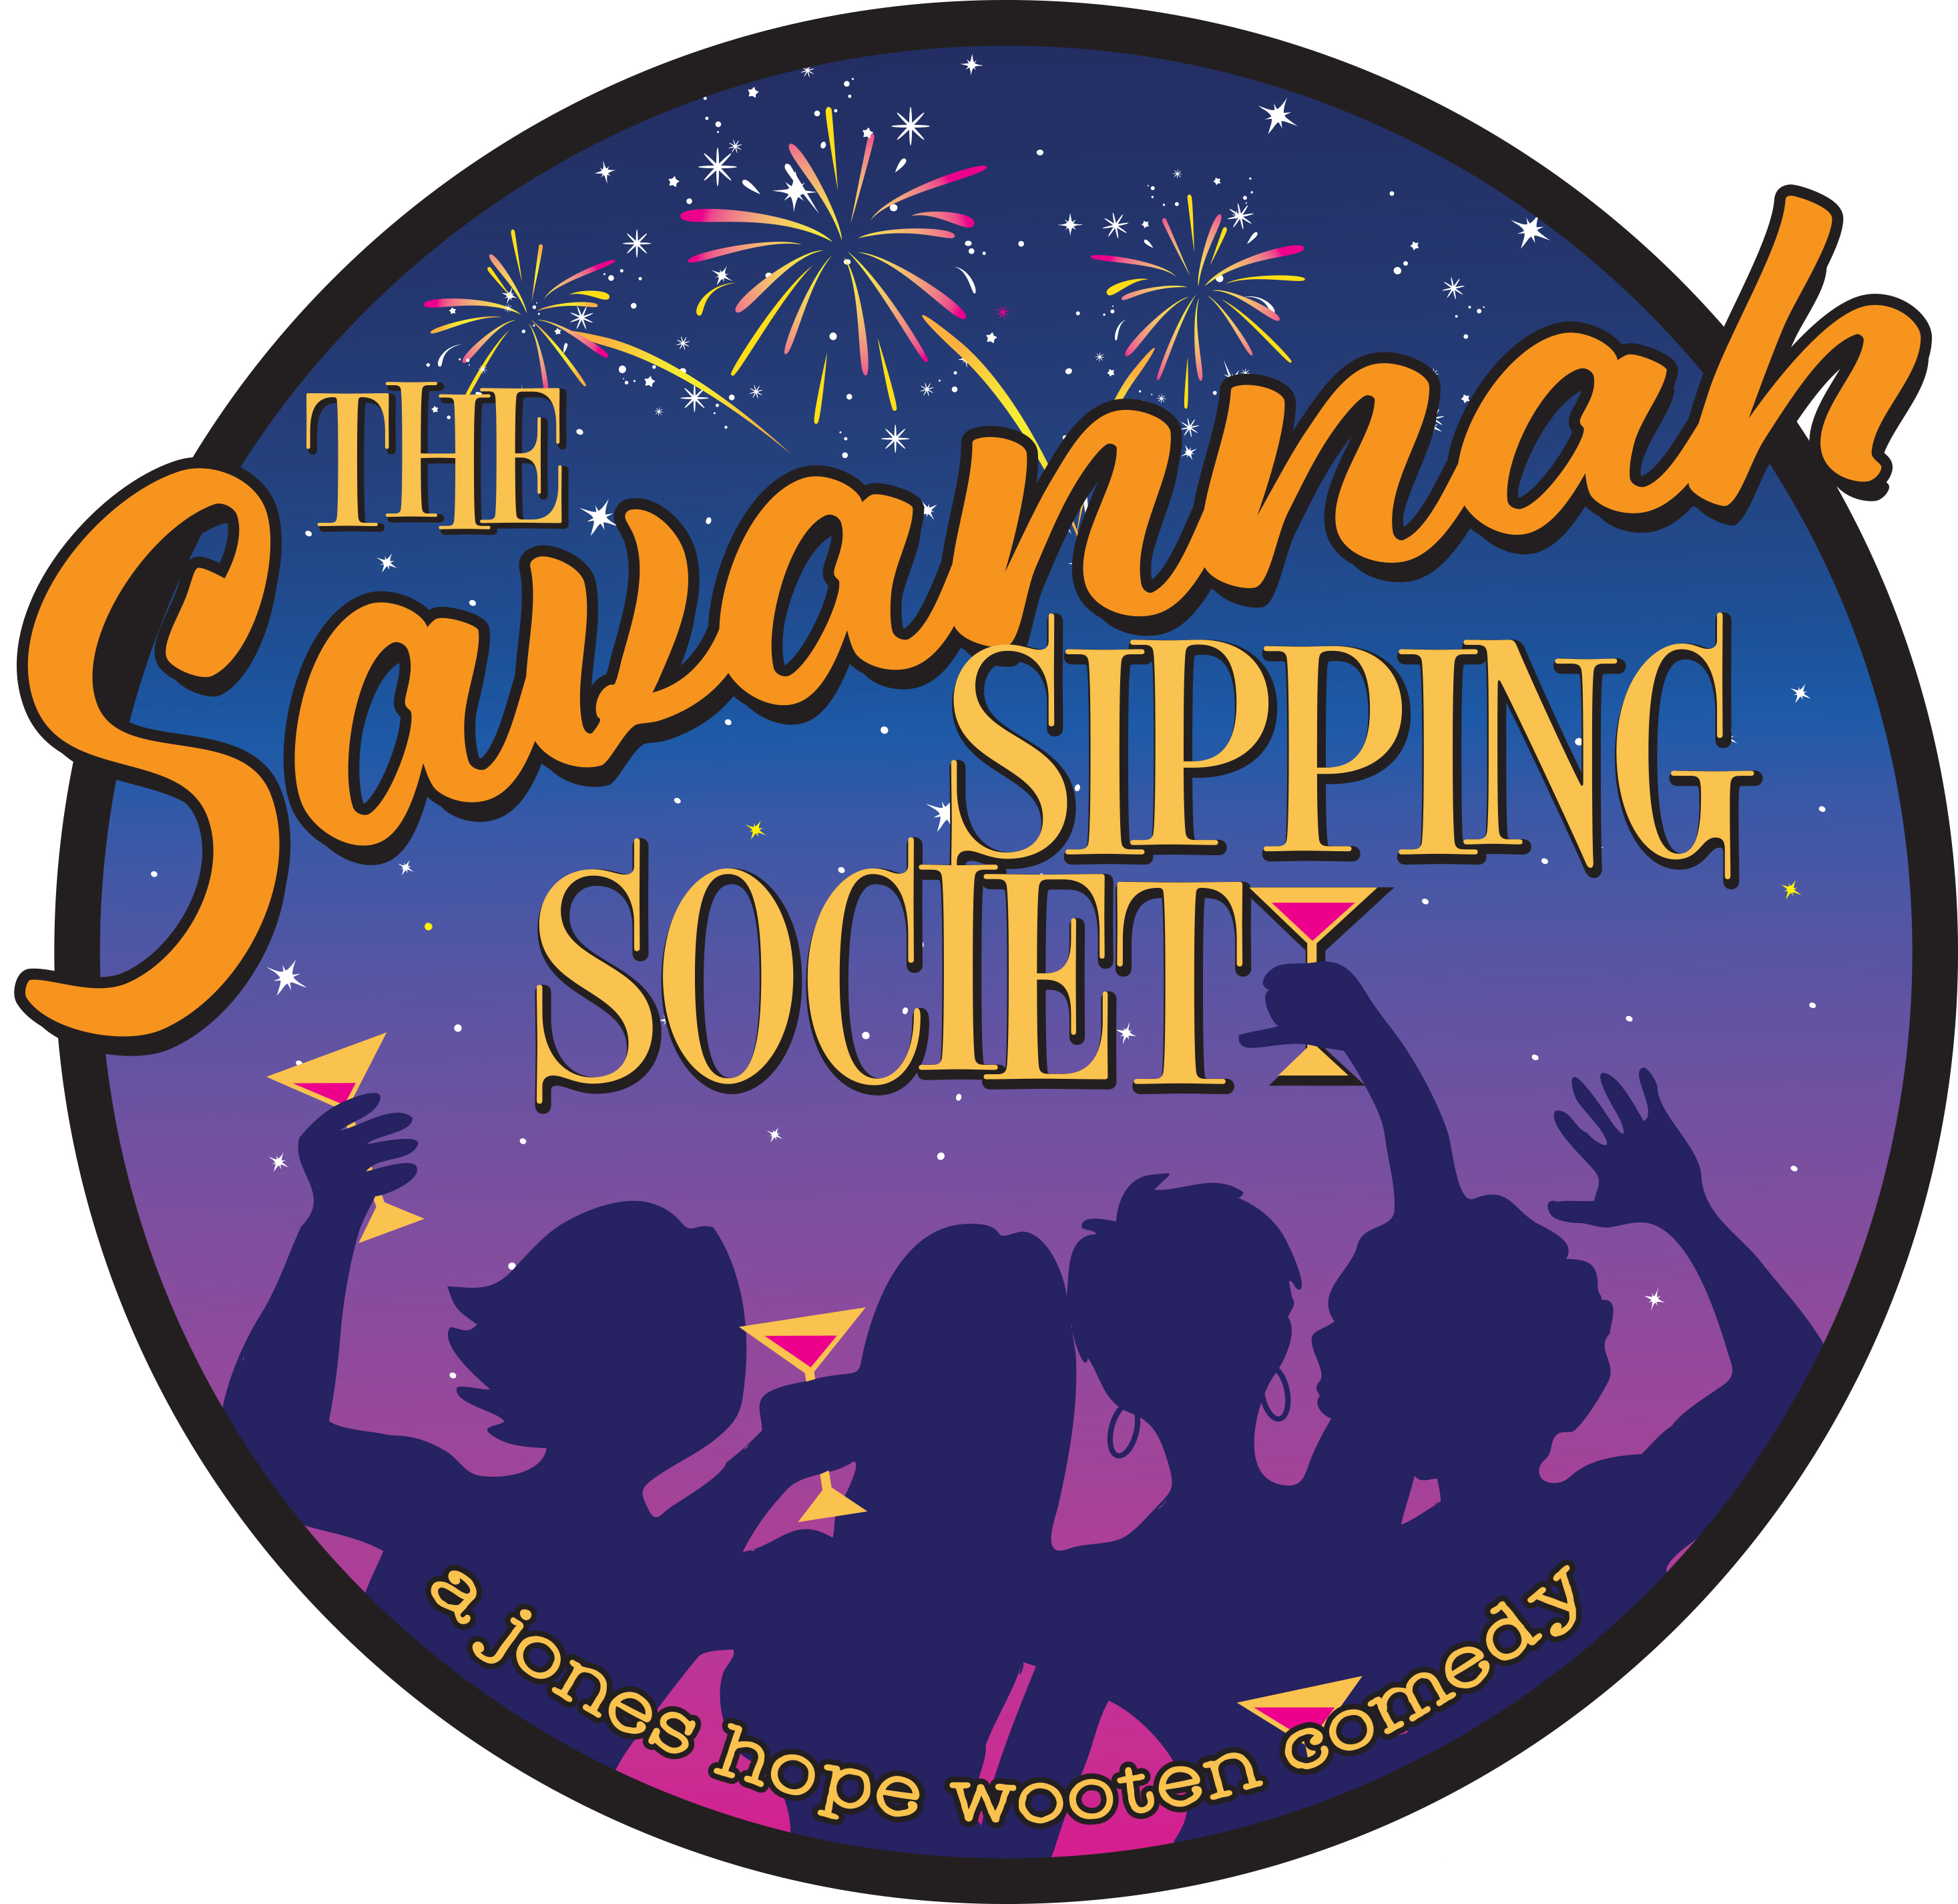 The Savannah Sipping Society logo